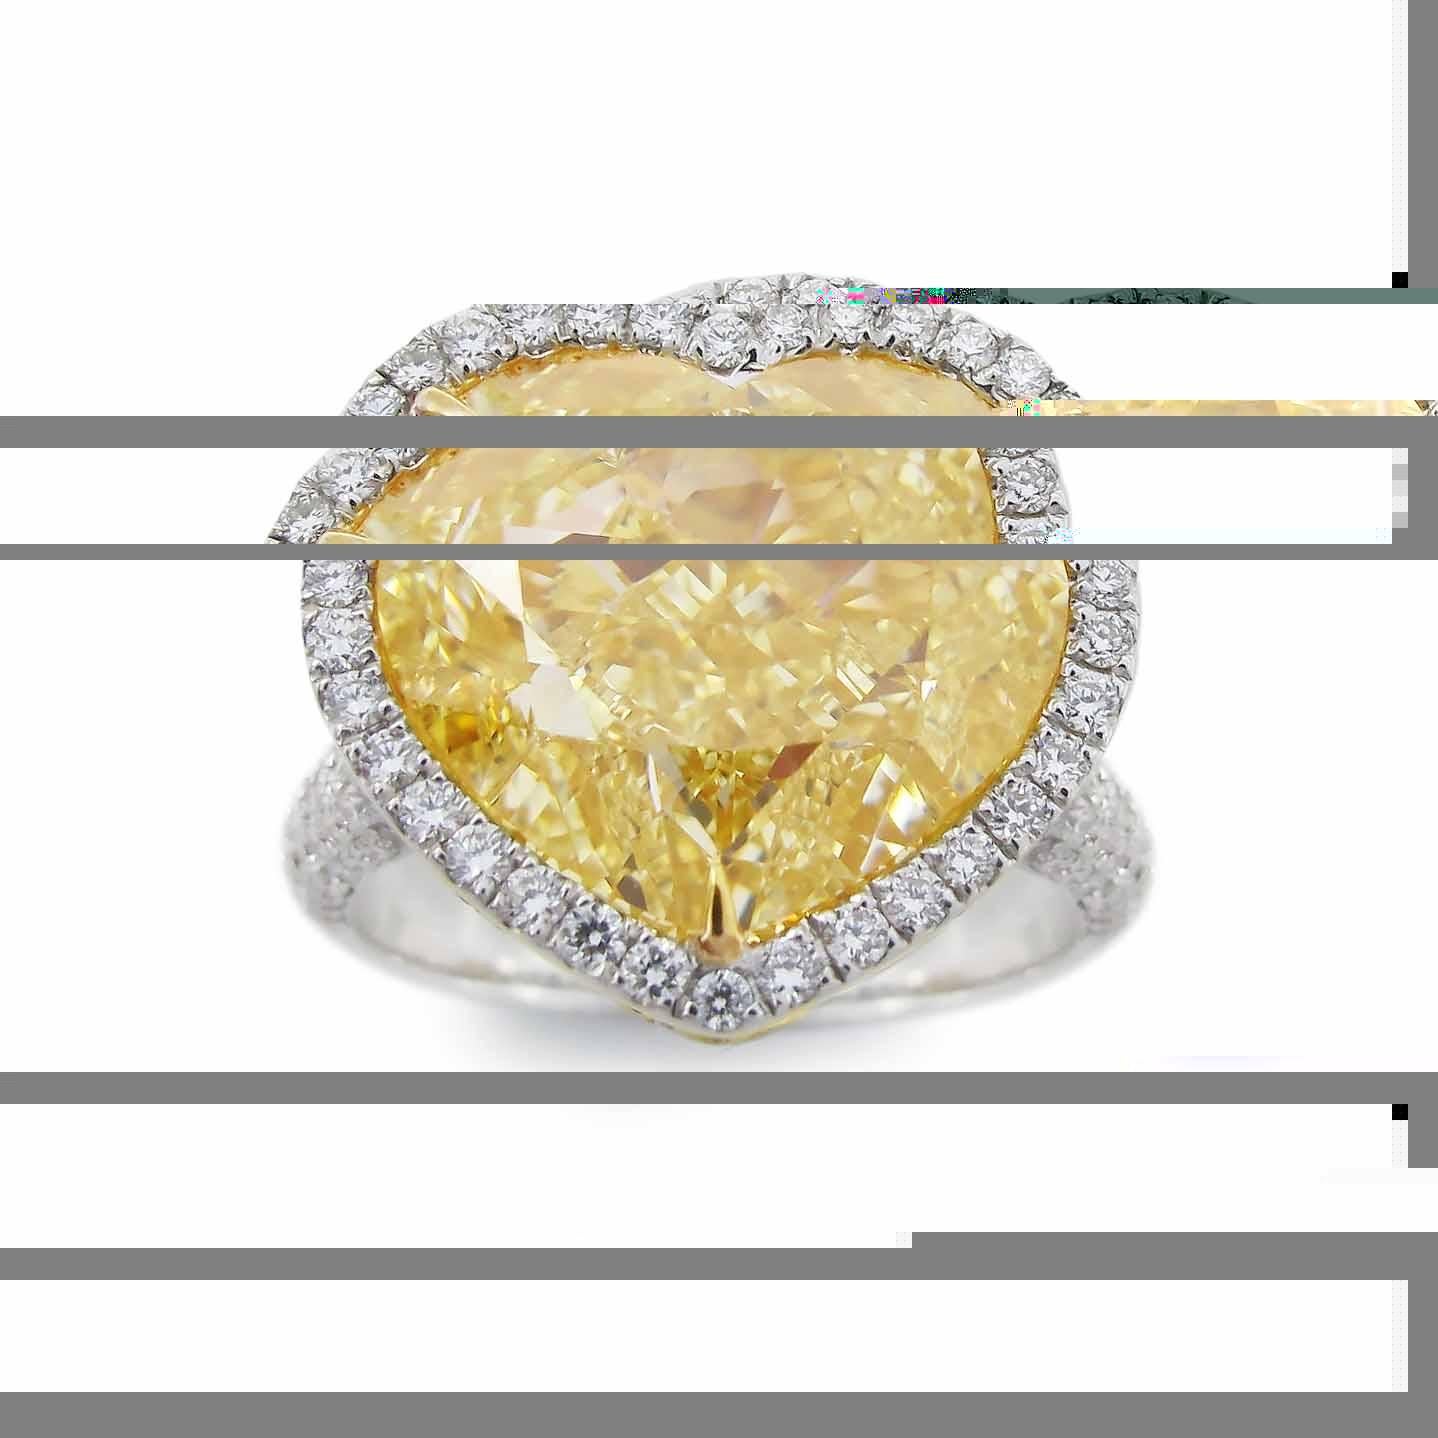 Aus dem Museumsgewölbe von Emilio Jewelry in der berühmten New Yorker Fifth Avenue,
Mit einem ganz besonderen und seltenen GIA-zertifizierten, natürlichen, gelben, herzförmigen Diamanten in der Mitte. Handgefertigt im Emilio Jewelry Atelier, das